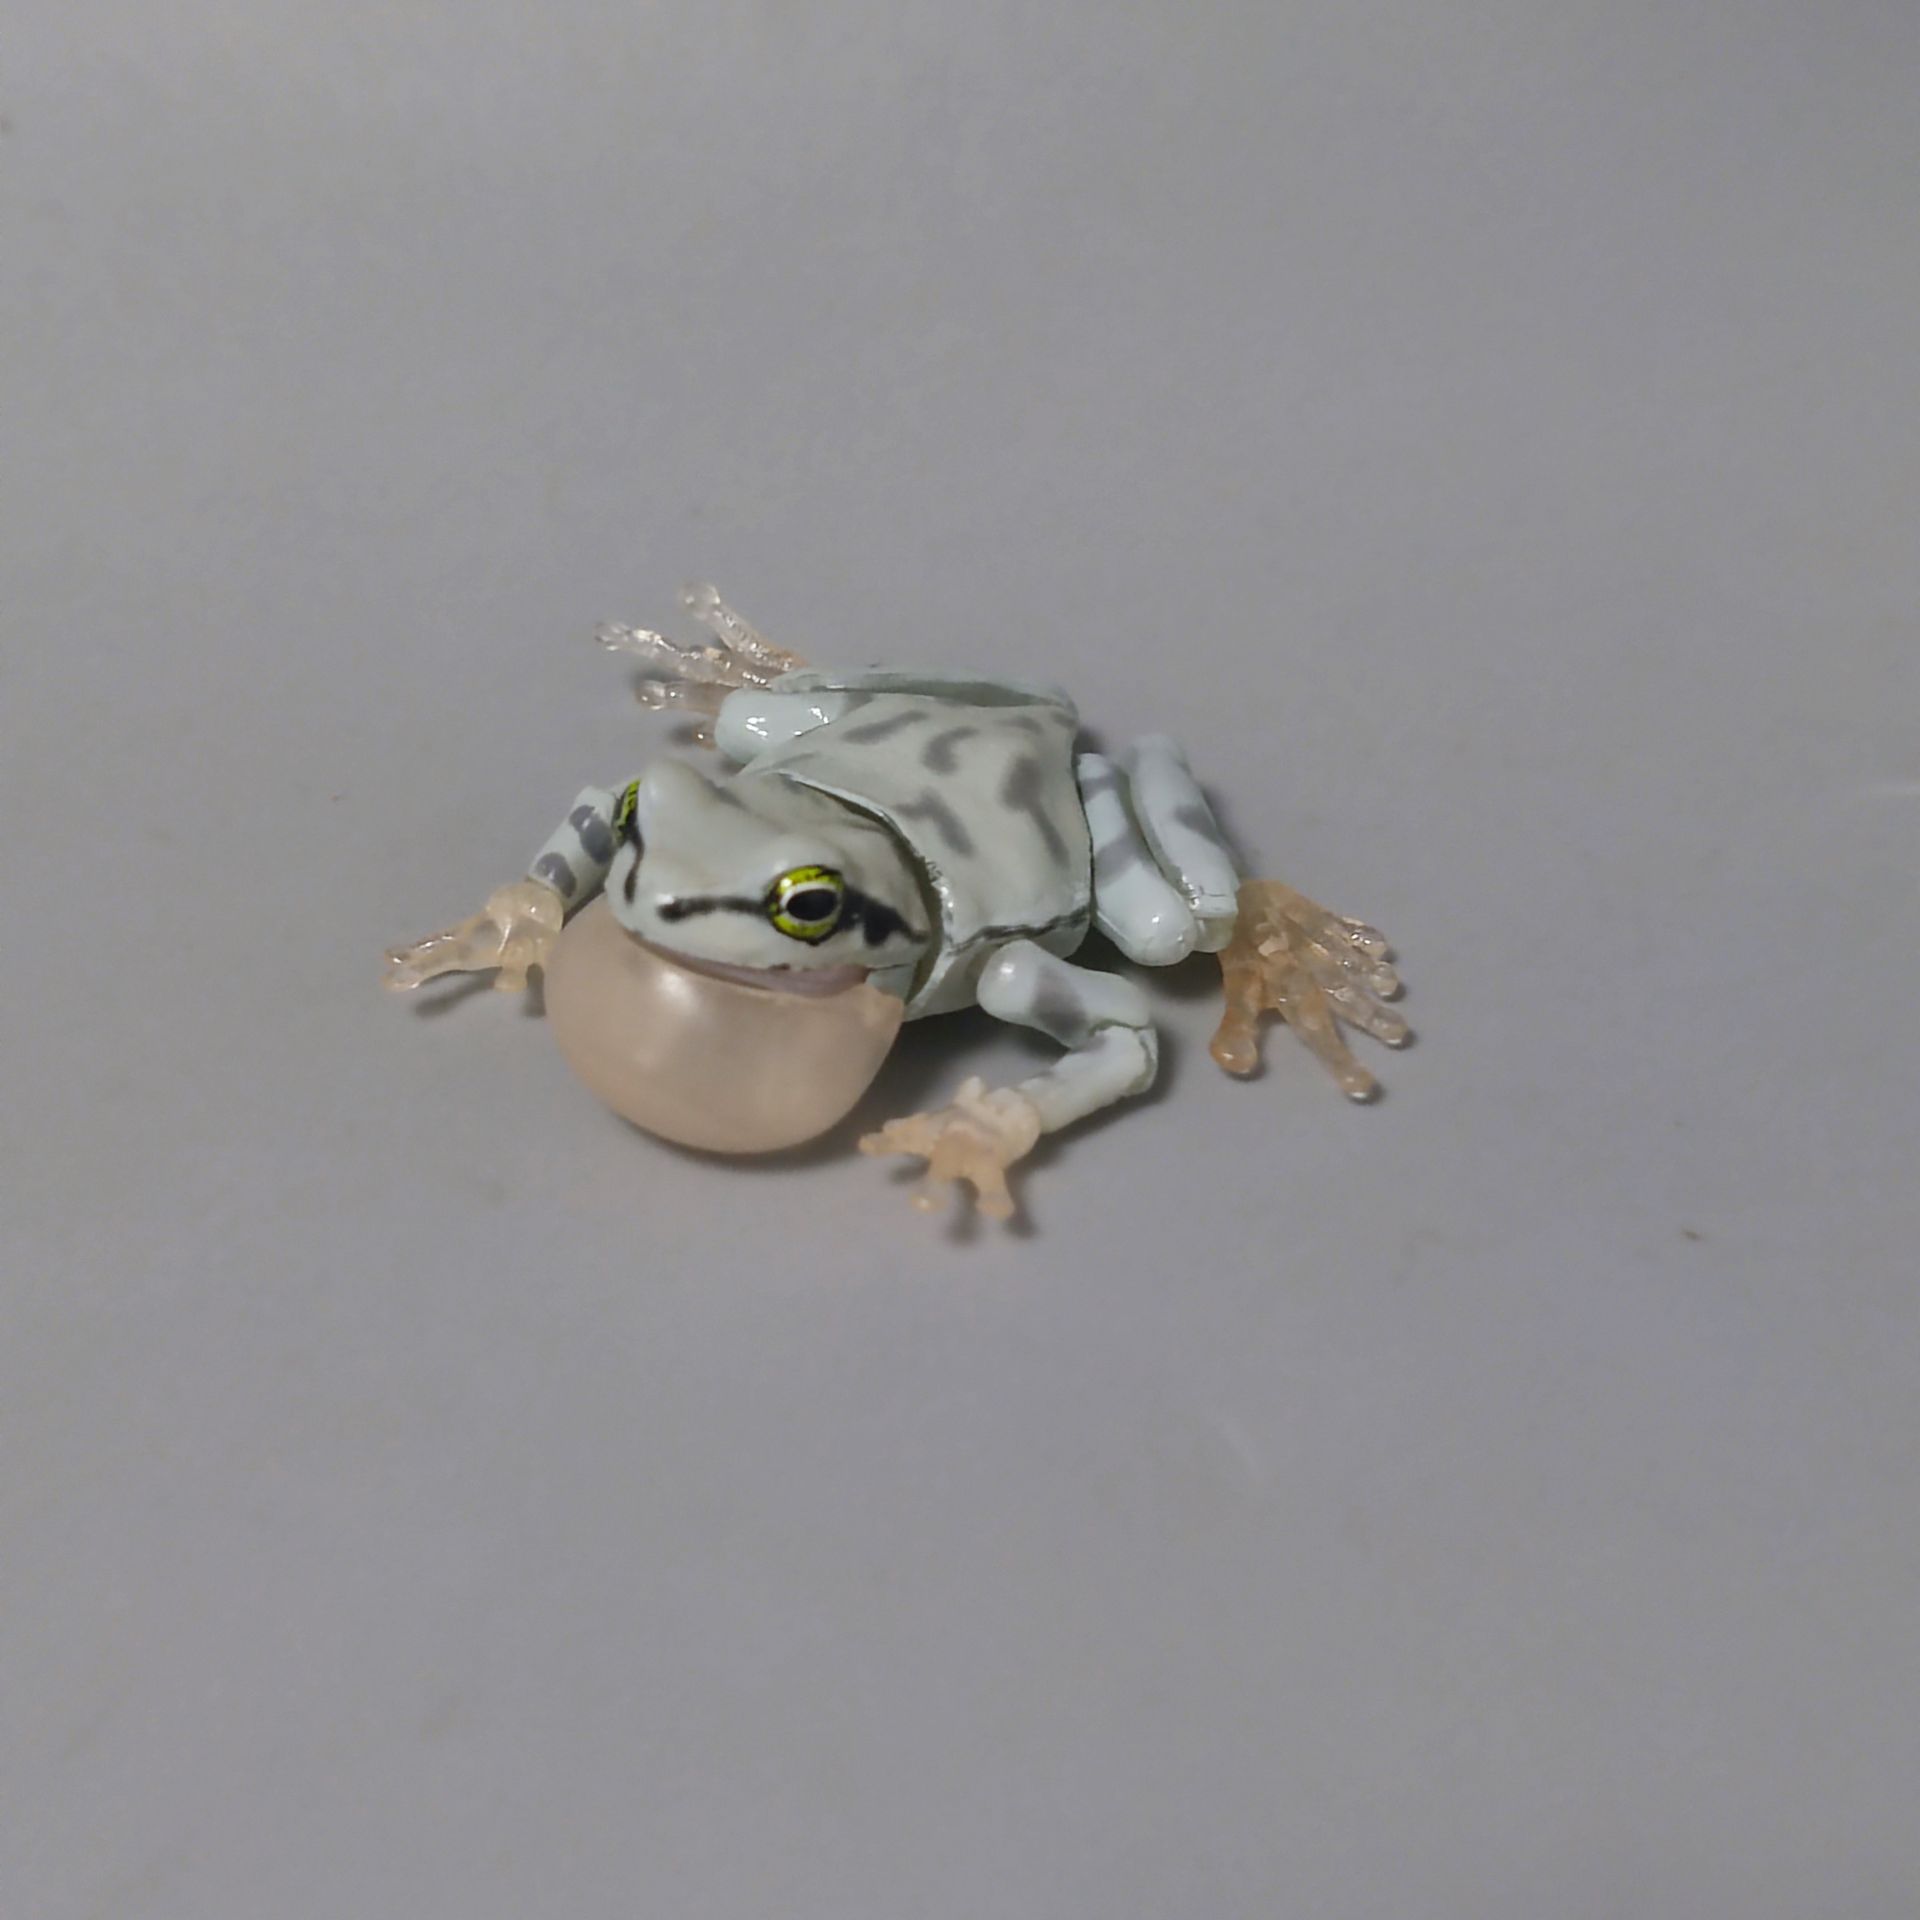 正版散货 万代 生物仿真图鉴 动物模型 青蛙 2寸 5cm 可动模型